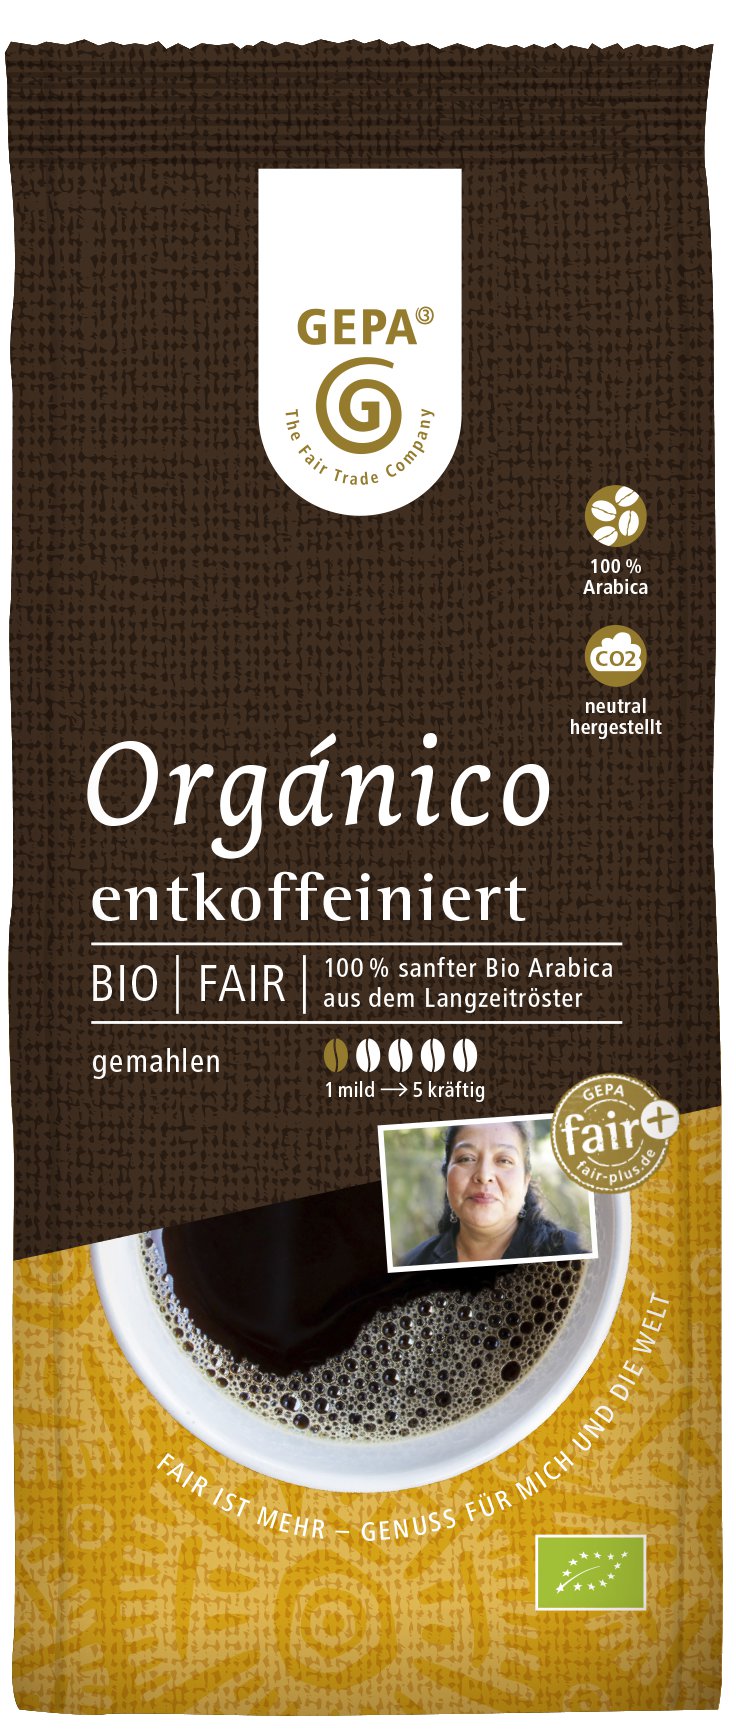 Gepa Cafe Organico entkoff. gemahlen 250g